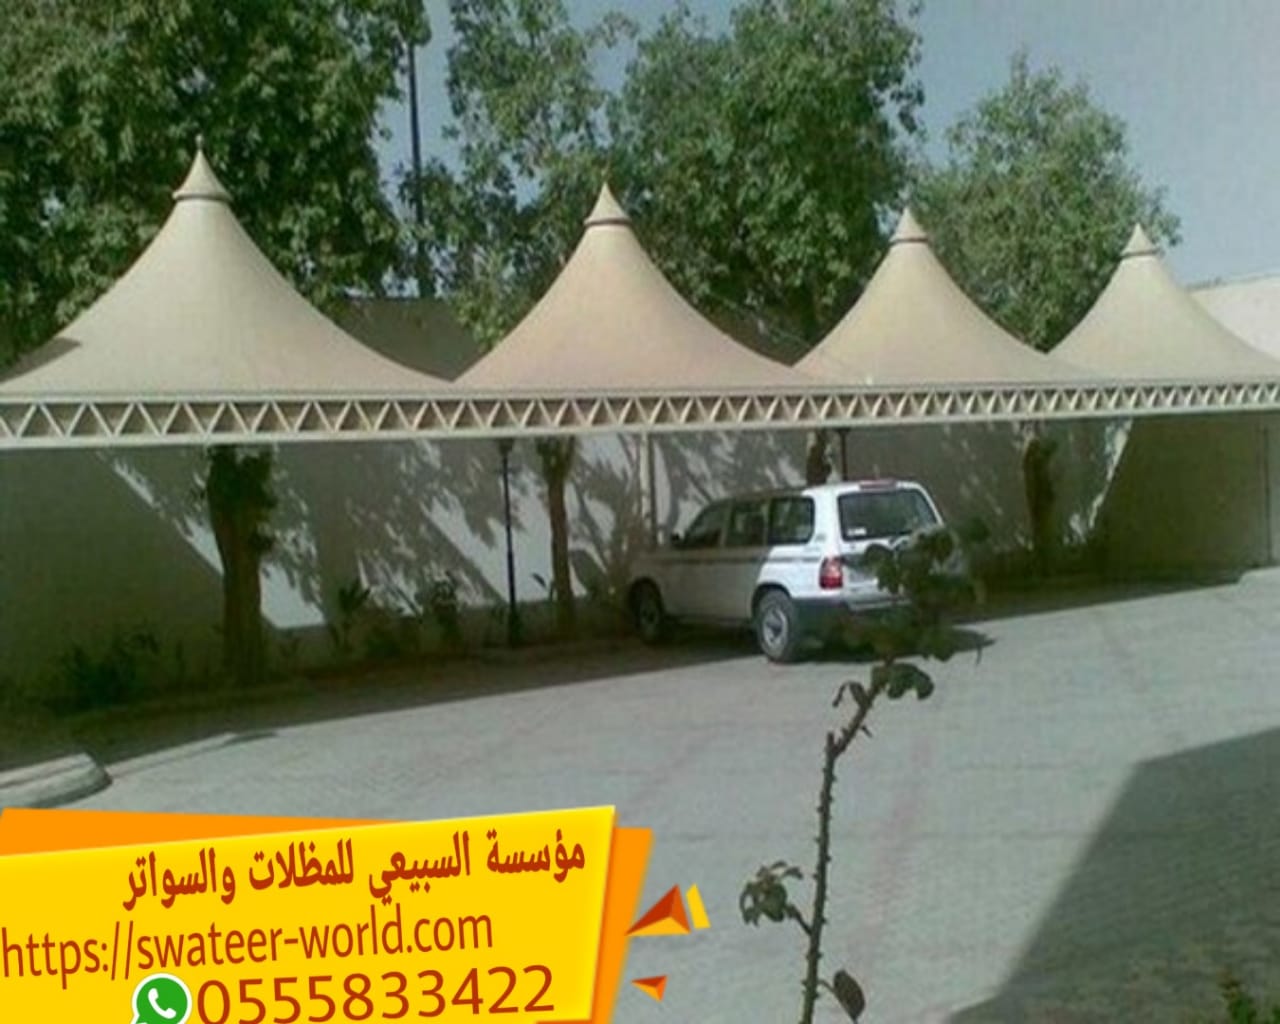 مظلات سيارات في الرياض , 0555833422 , شركة مظلات بالرياض , مظلات وسواتر الرياض بجودة عالية ,  P_1609ughv410